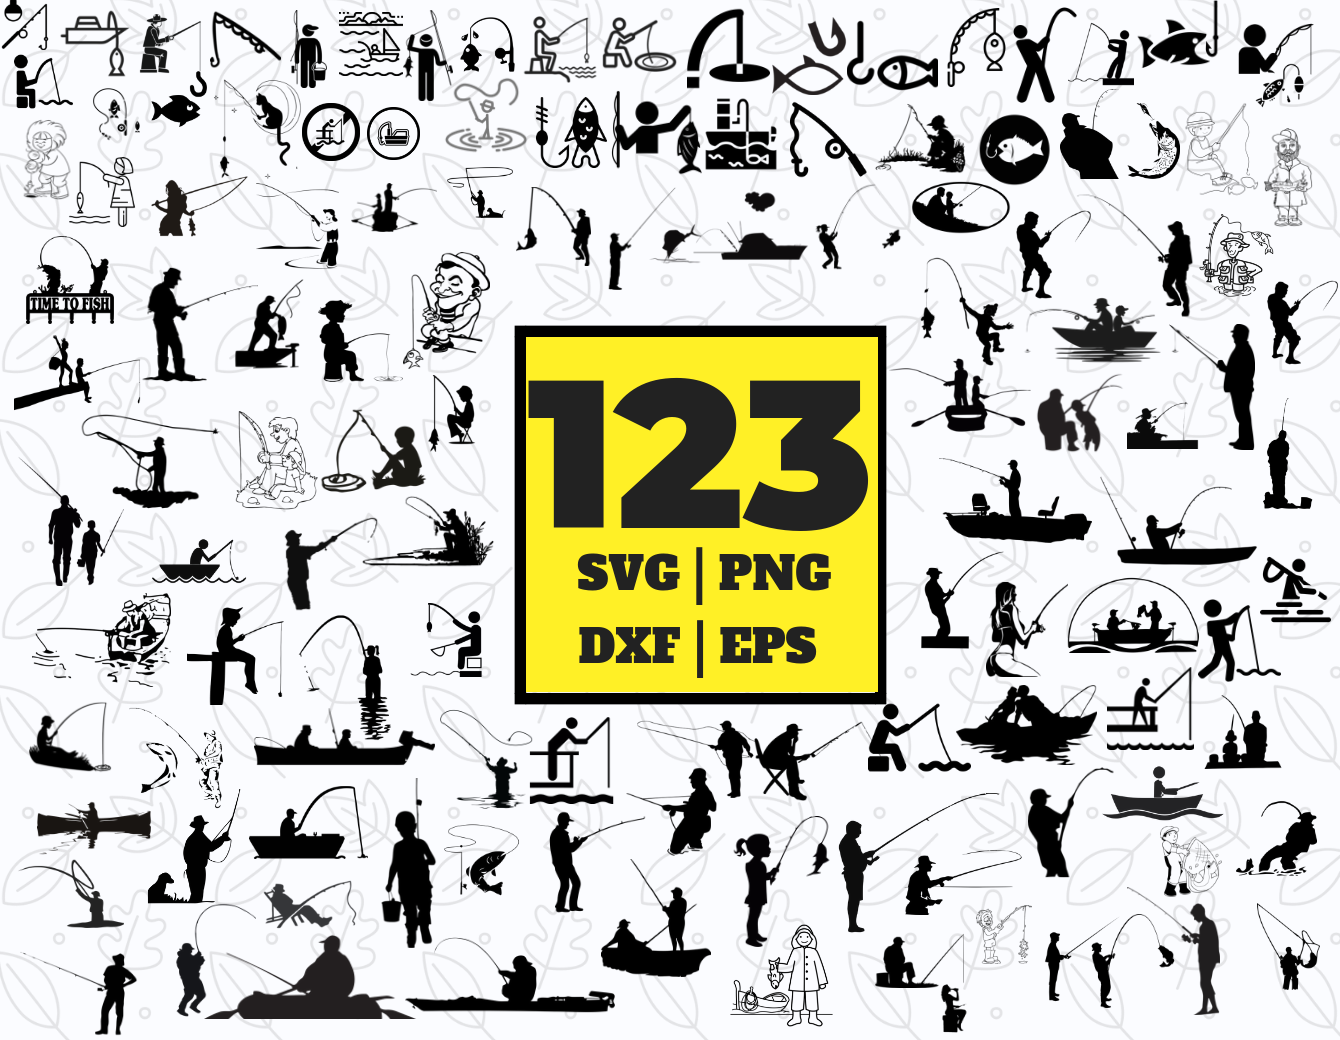 Free Free Fishing Svg Bundles 869 SVG PNG EPS DXF File